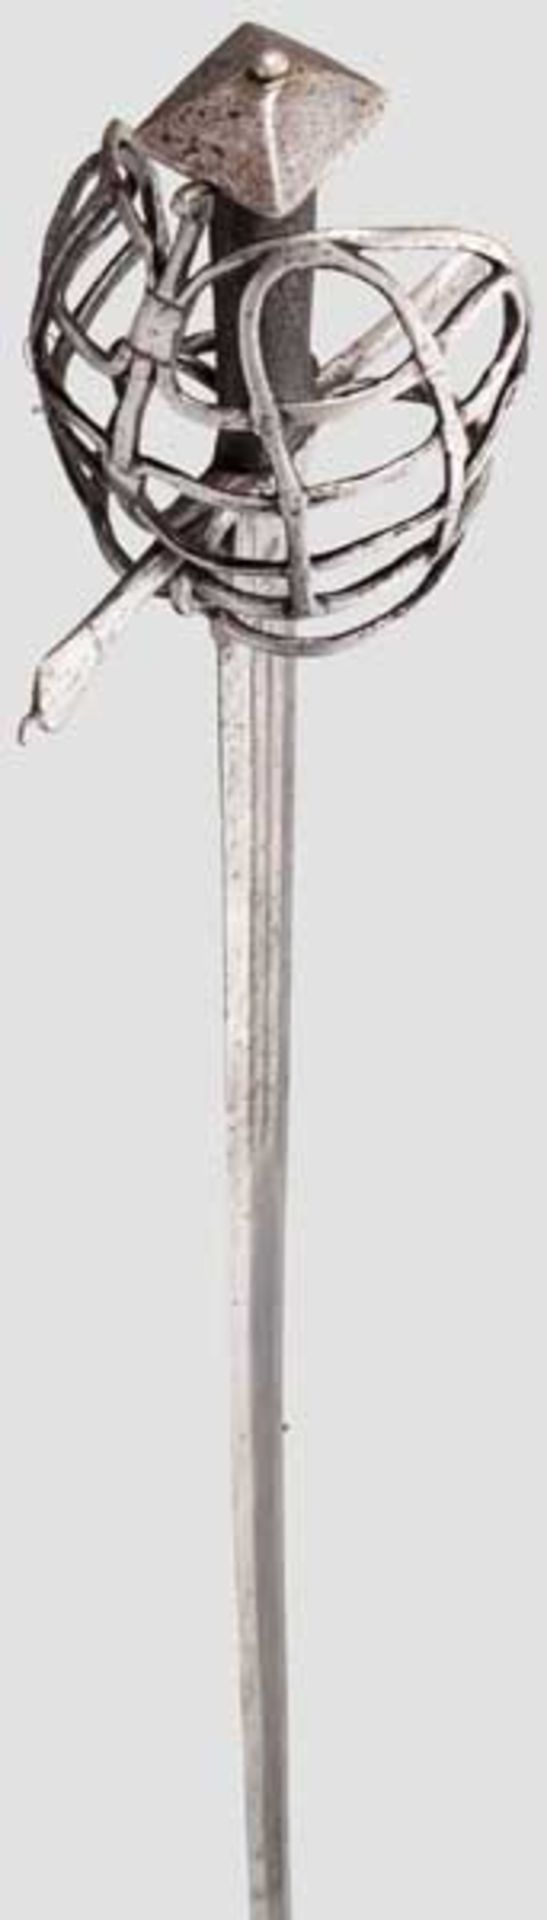 Korbschwert, steirisch um 1580 Kräftige, zweischneidige Klinge mit abgeflachtem Mittelgrat. Im - Bild 3 aus 5